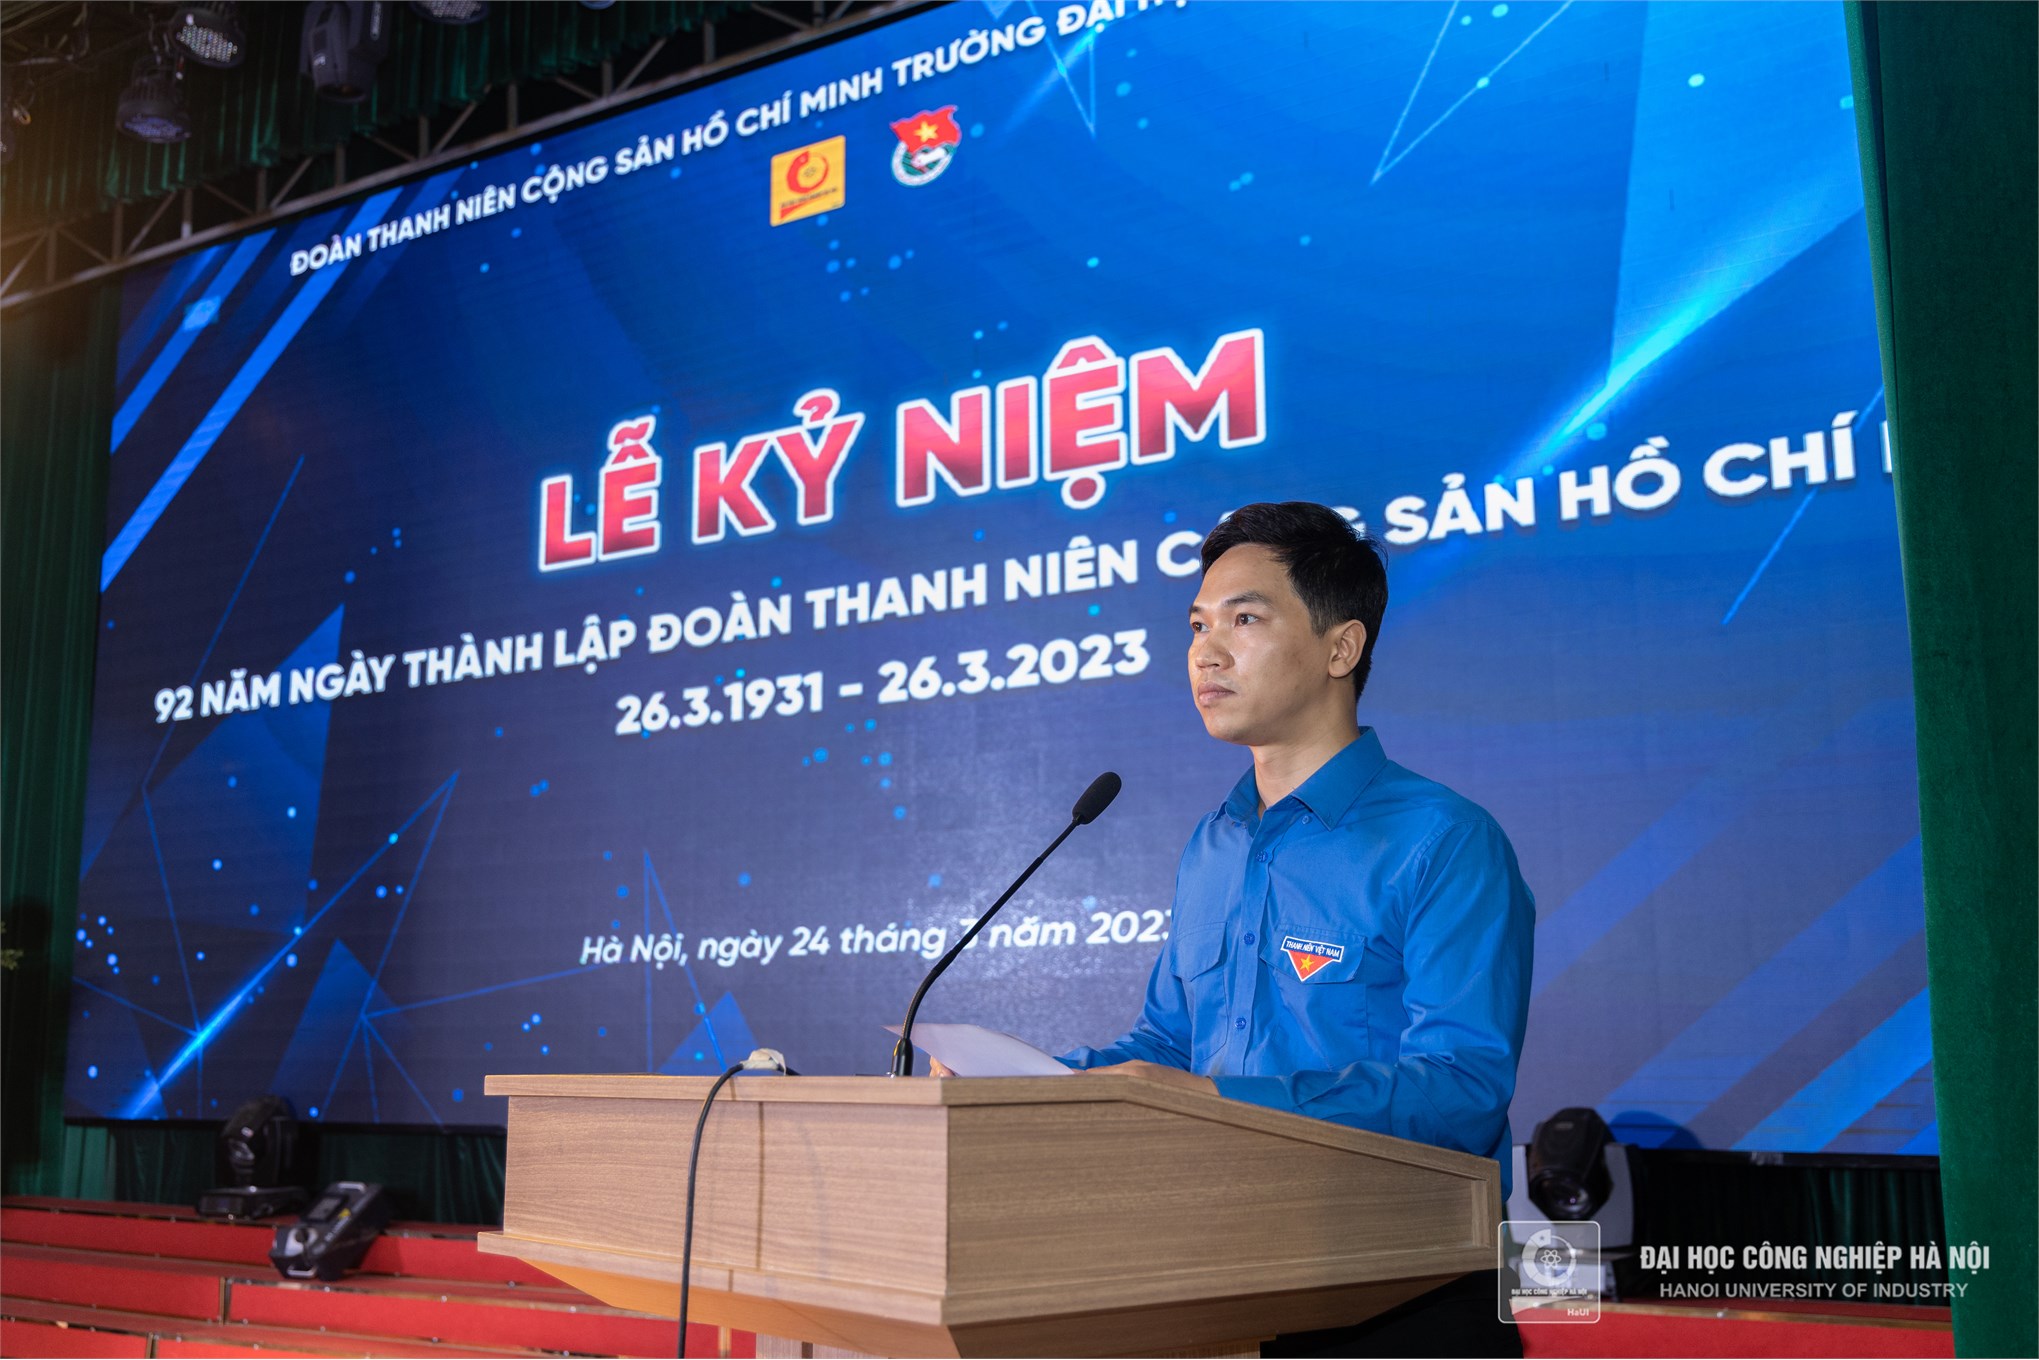 Tuổi trẻ Đại học Công nghiệp Hà Nội kỷ niệm 92 năm ngày thành lập Đoàn TNCS Hồ Chí Minh